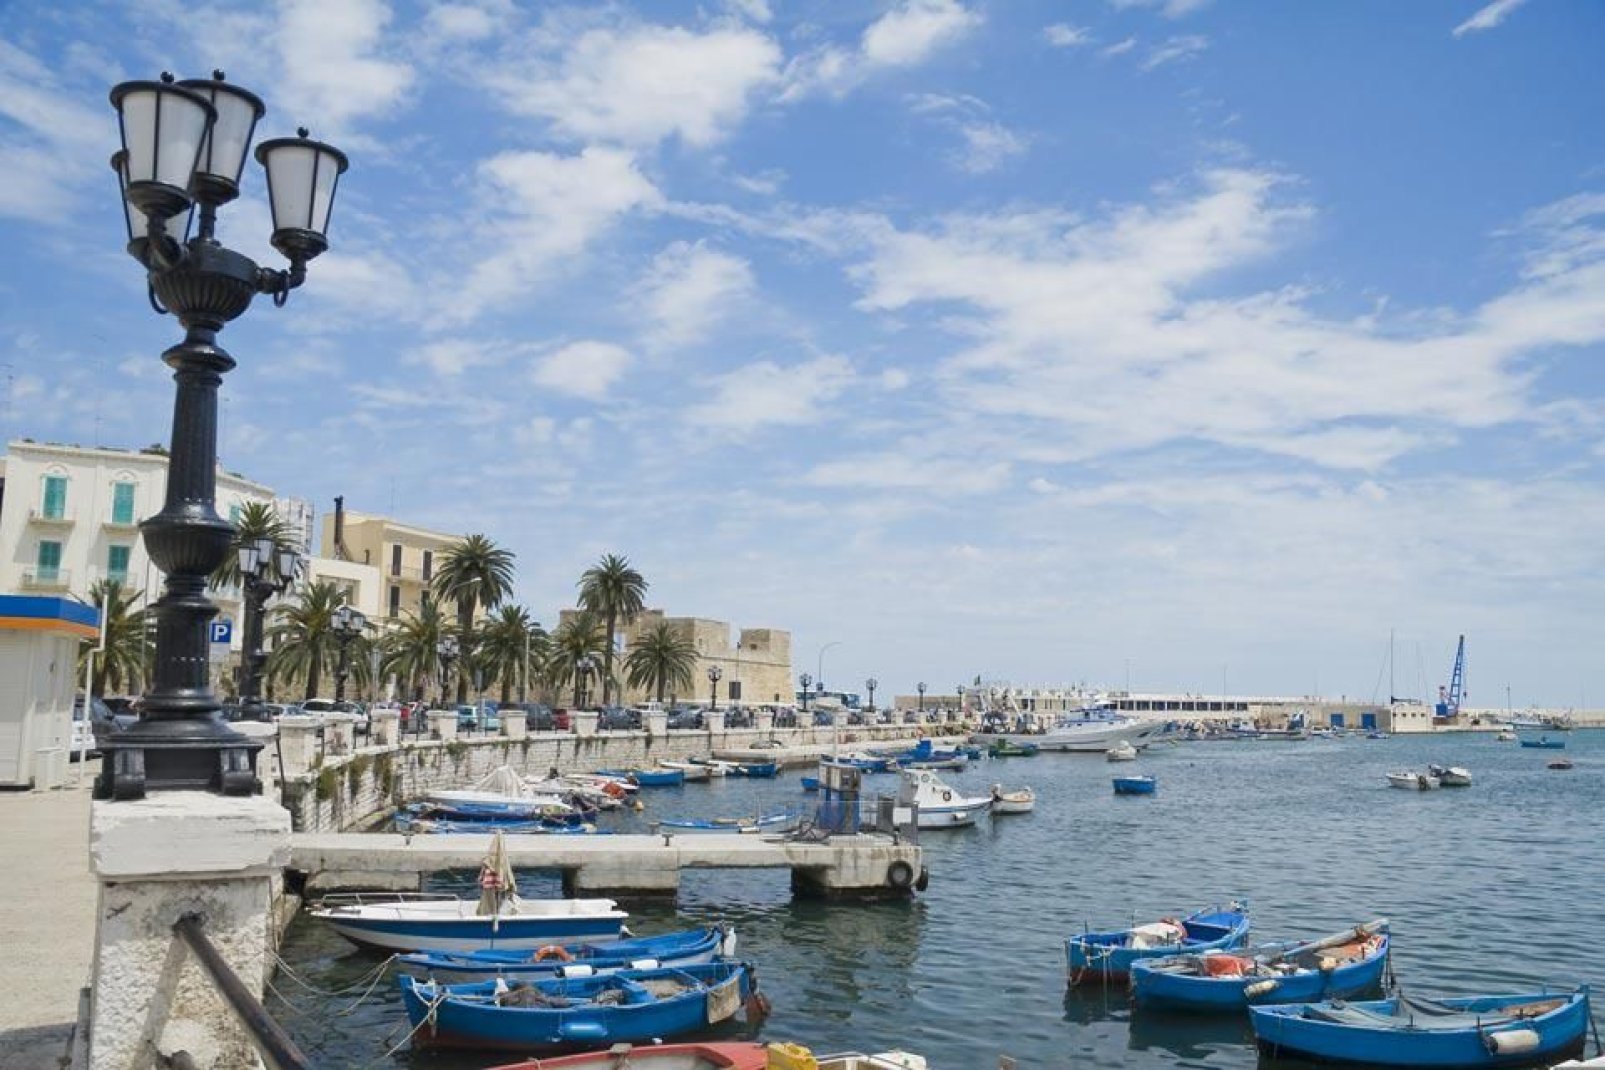 Centrale per la vita cittadina, il porto di Bari ha, per secoli, favorito la prosperità della città